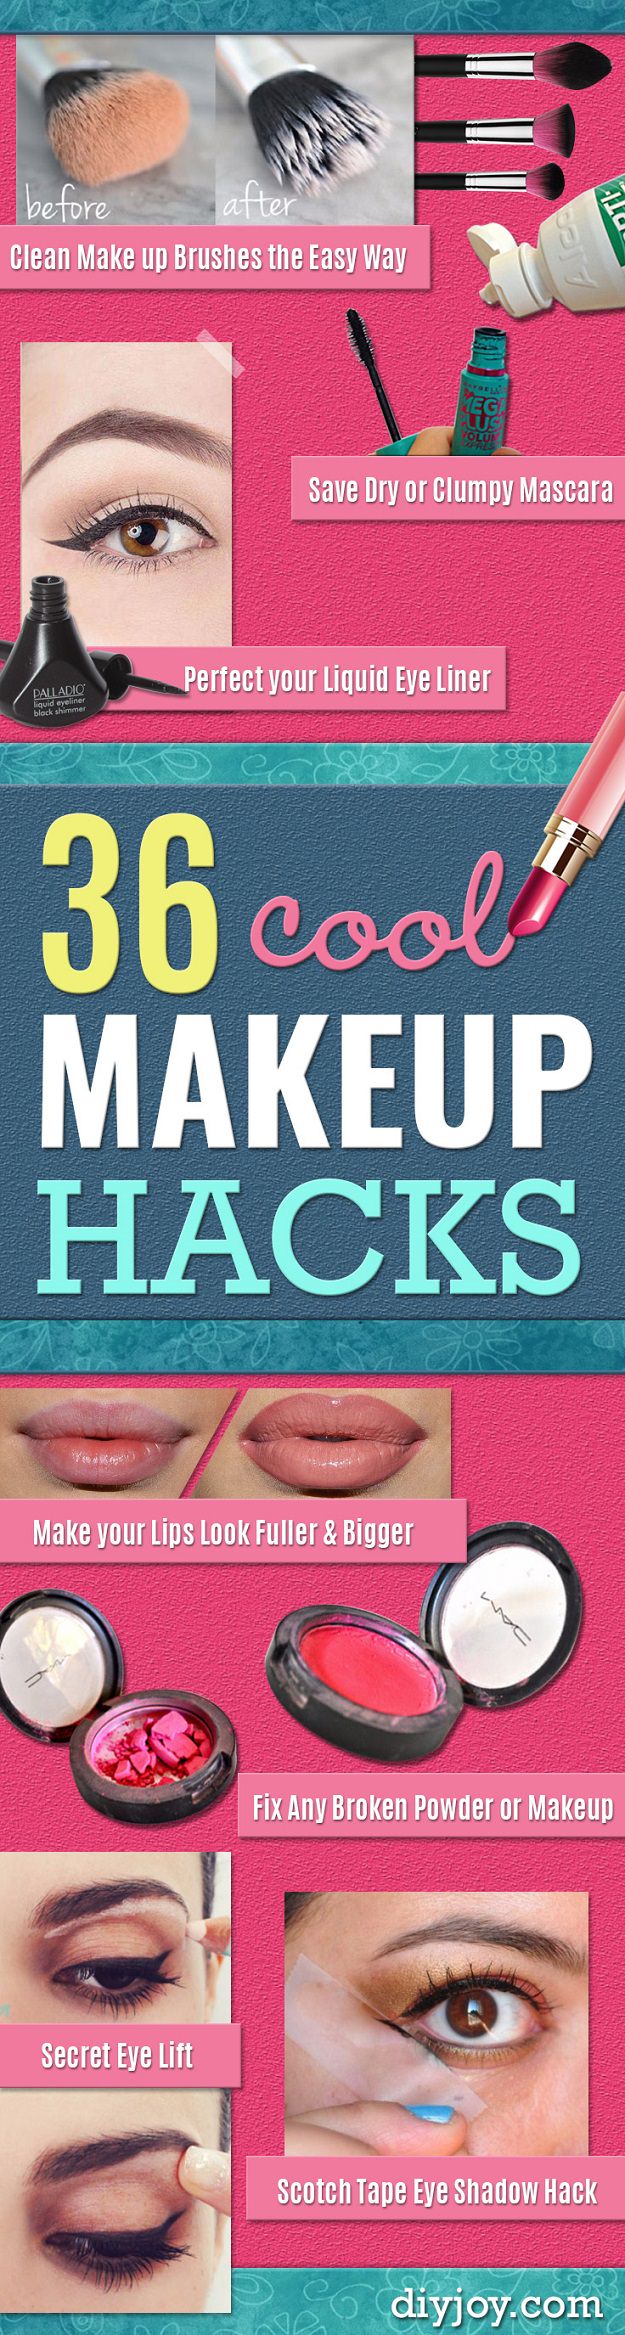 36-cool-make-up-hacks-pin